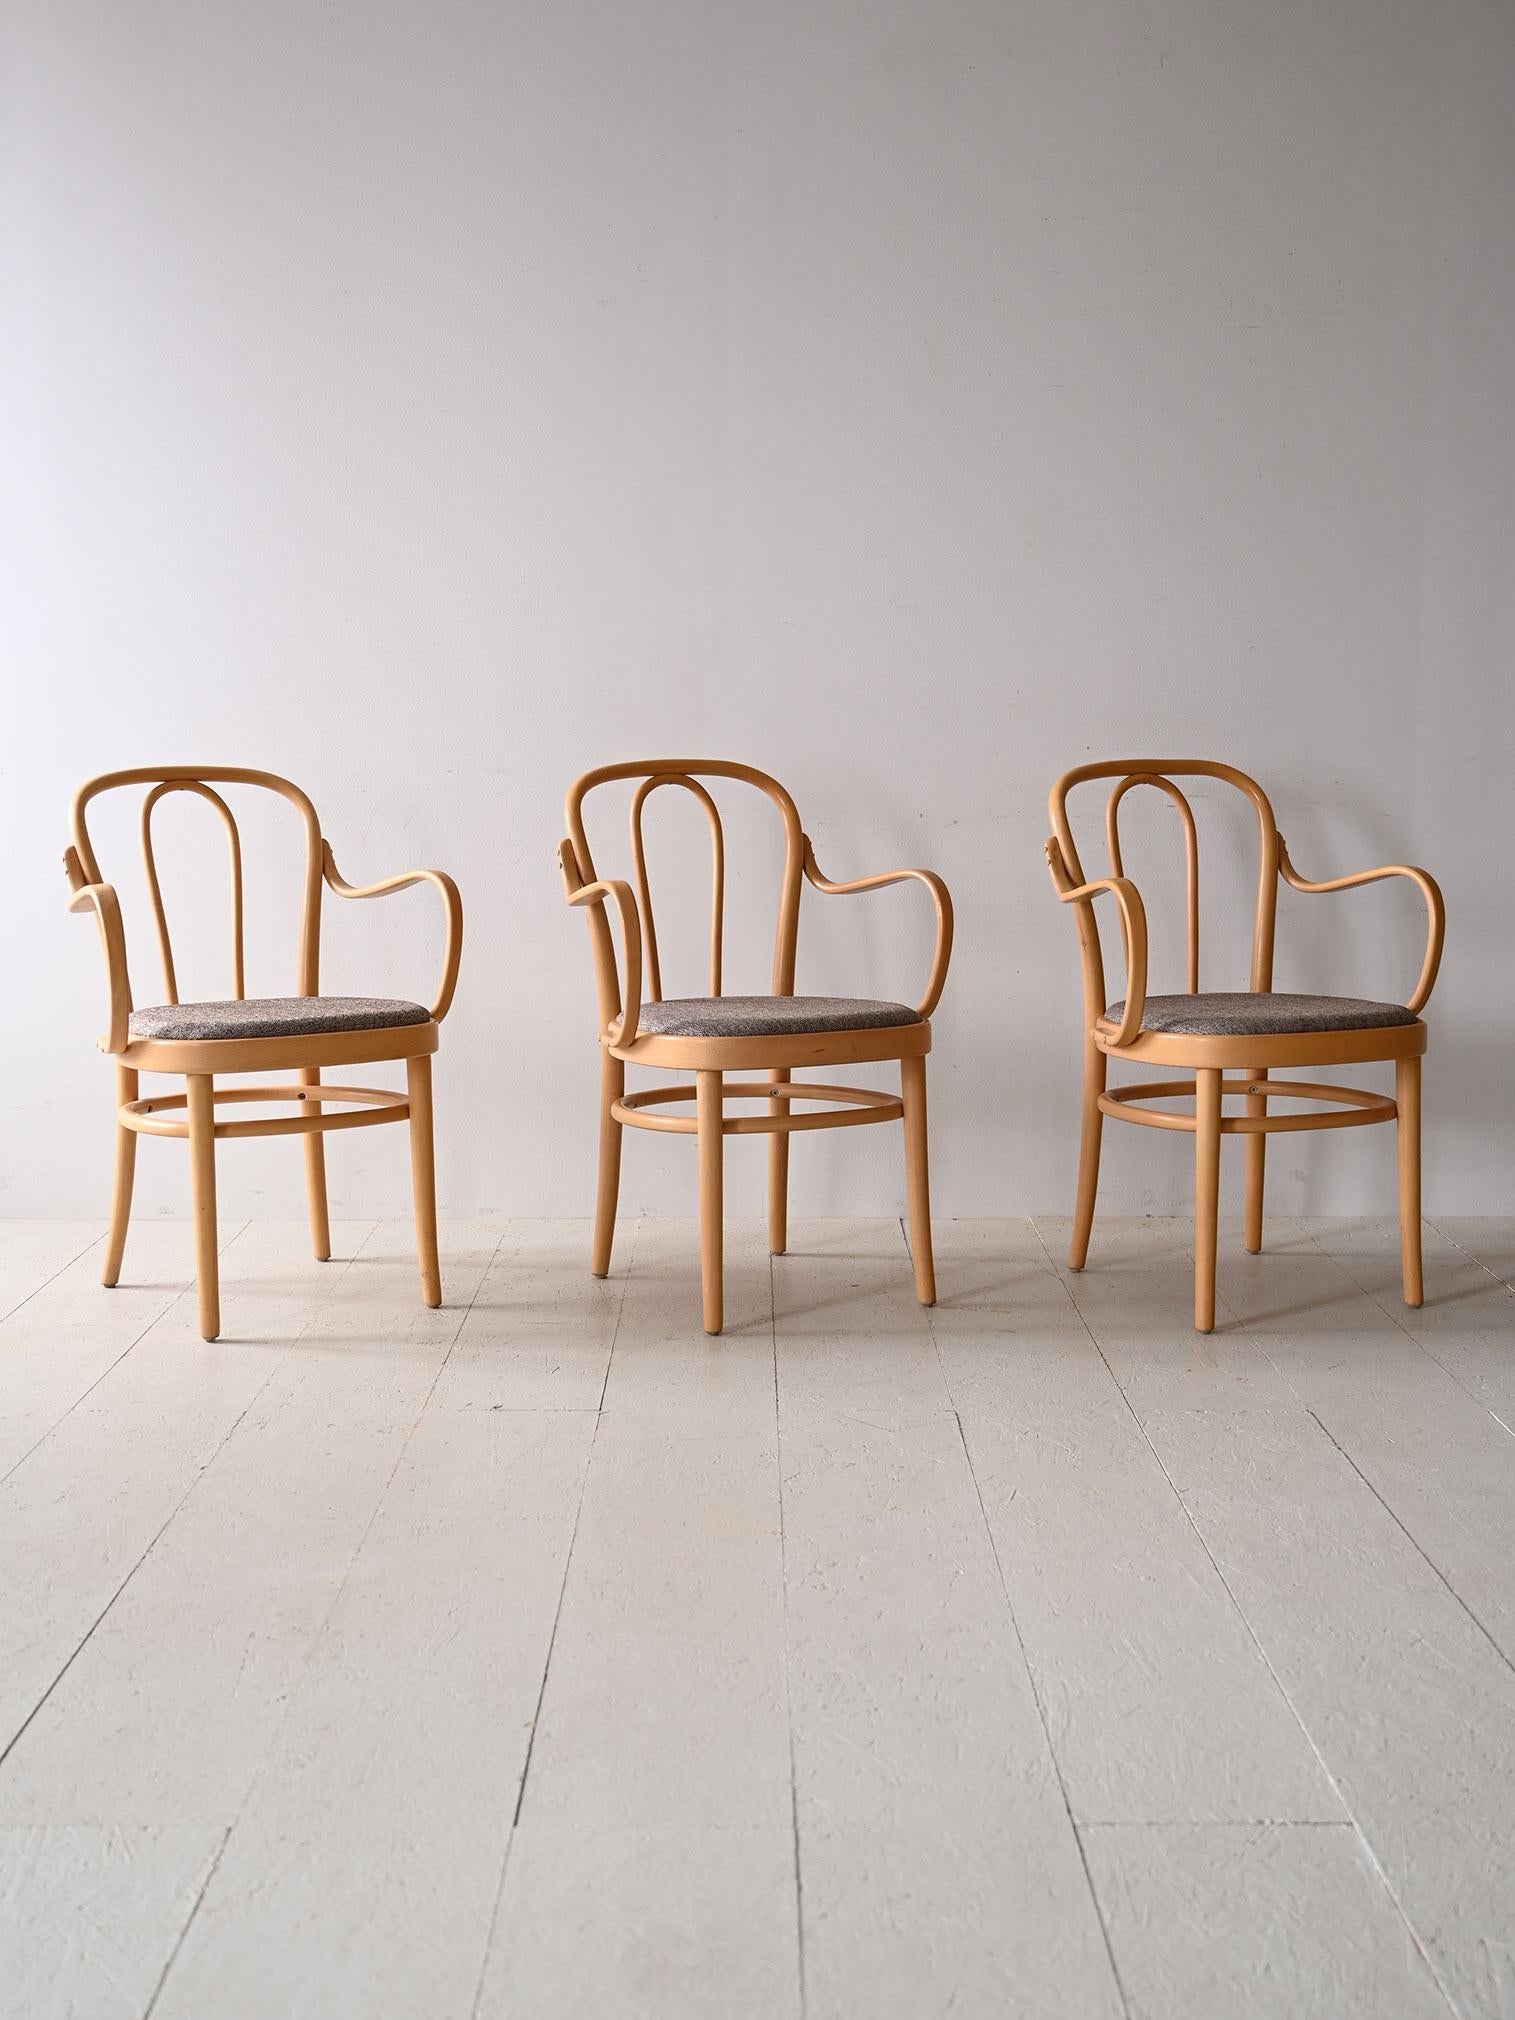 Set di sedie scandinave in legno con seduta imbottita.

Queste bellissime sedie vintage dal fascino retrò presentano una struttura in legno chiaro di faggio dalle forme morbide che rimandano al design organico della tradizione nordica.
La seduta